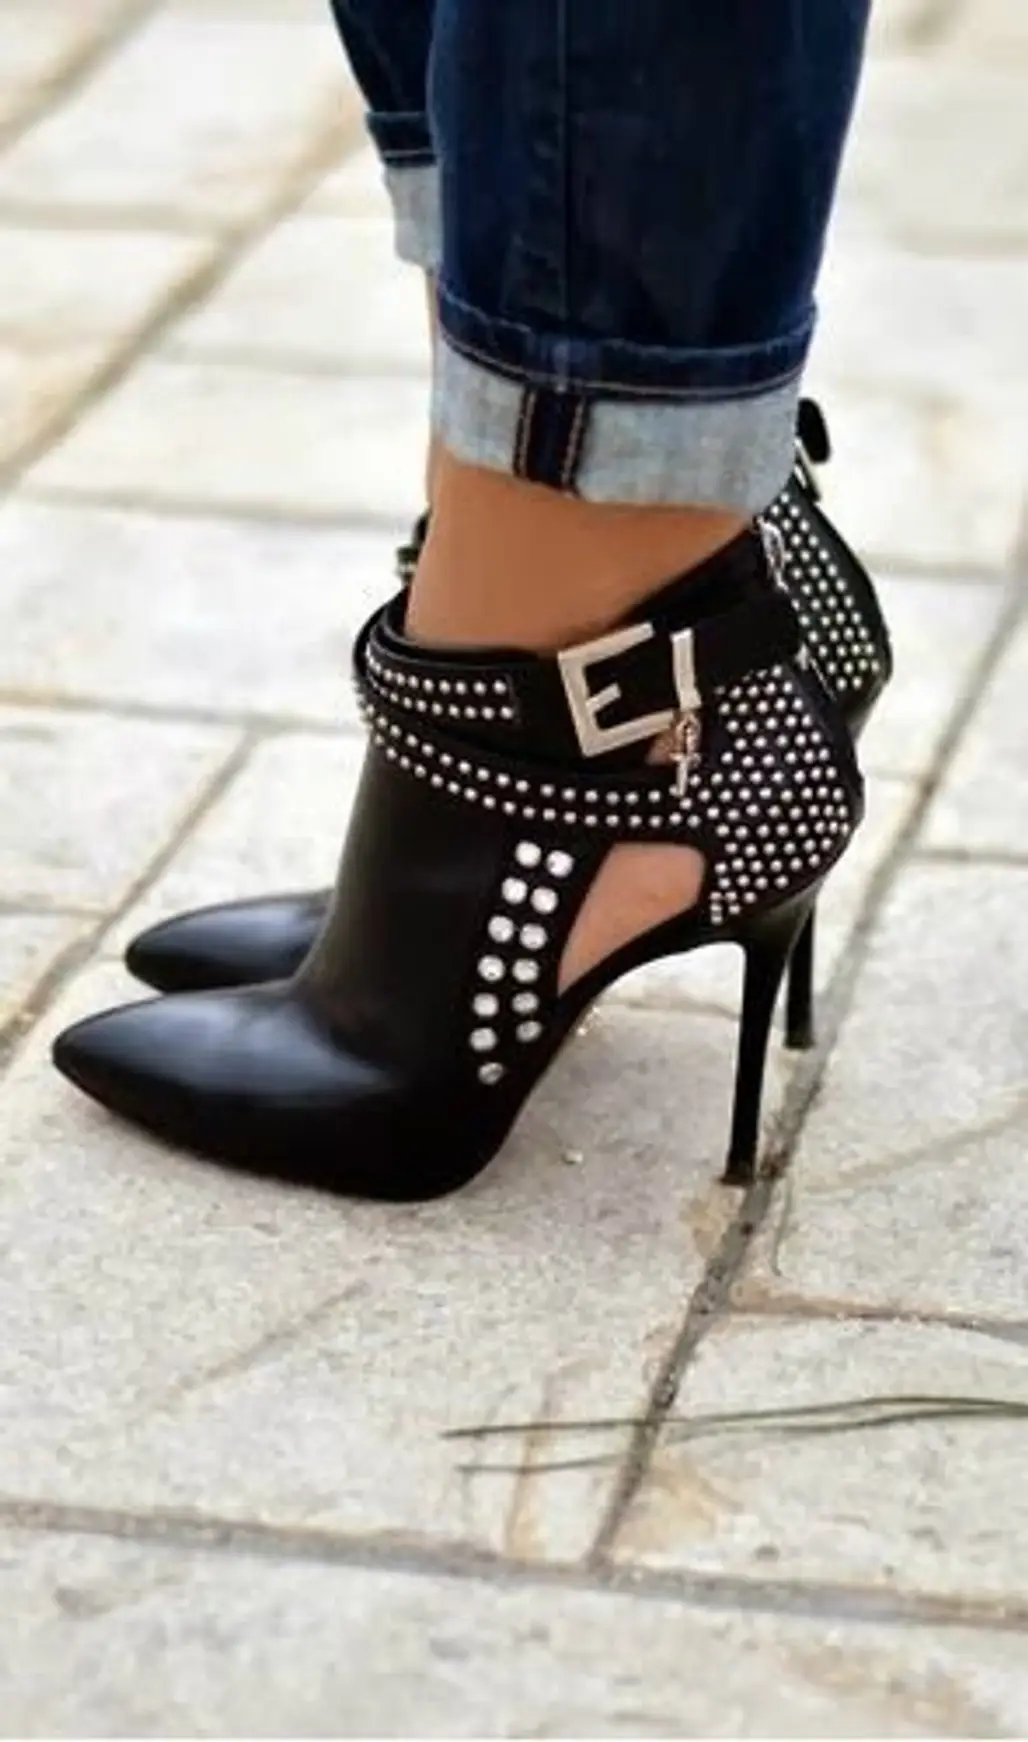 footwear,high heeled footwear,shoe,leg,leather,